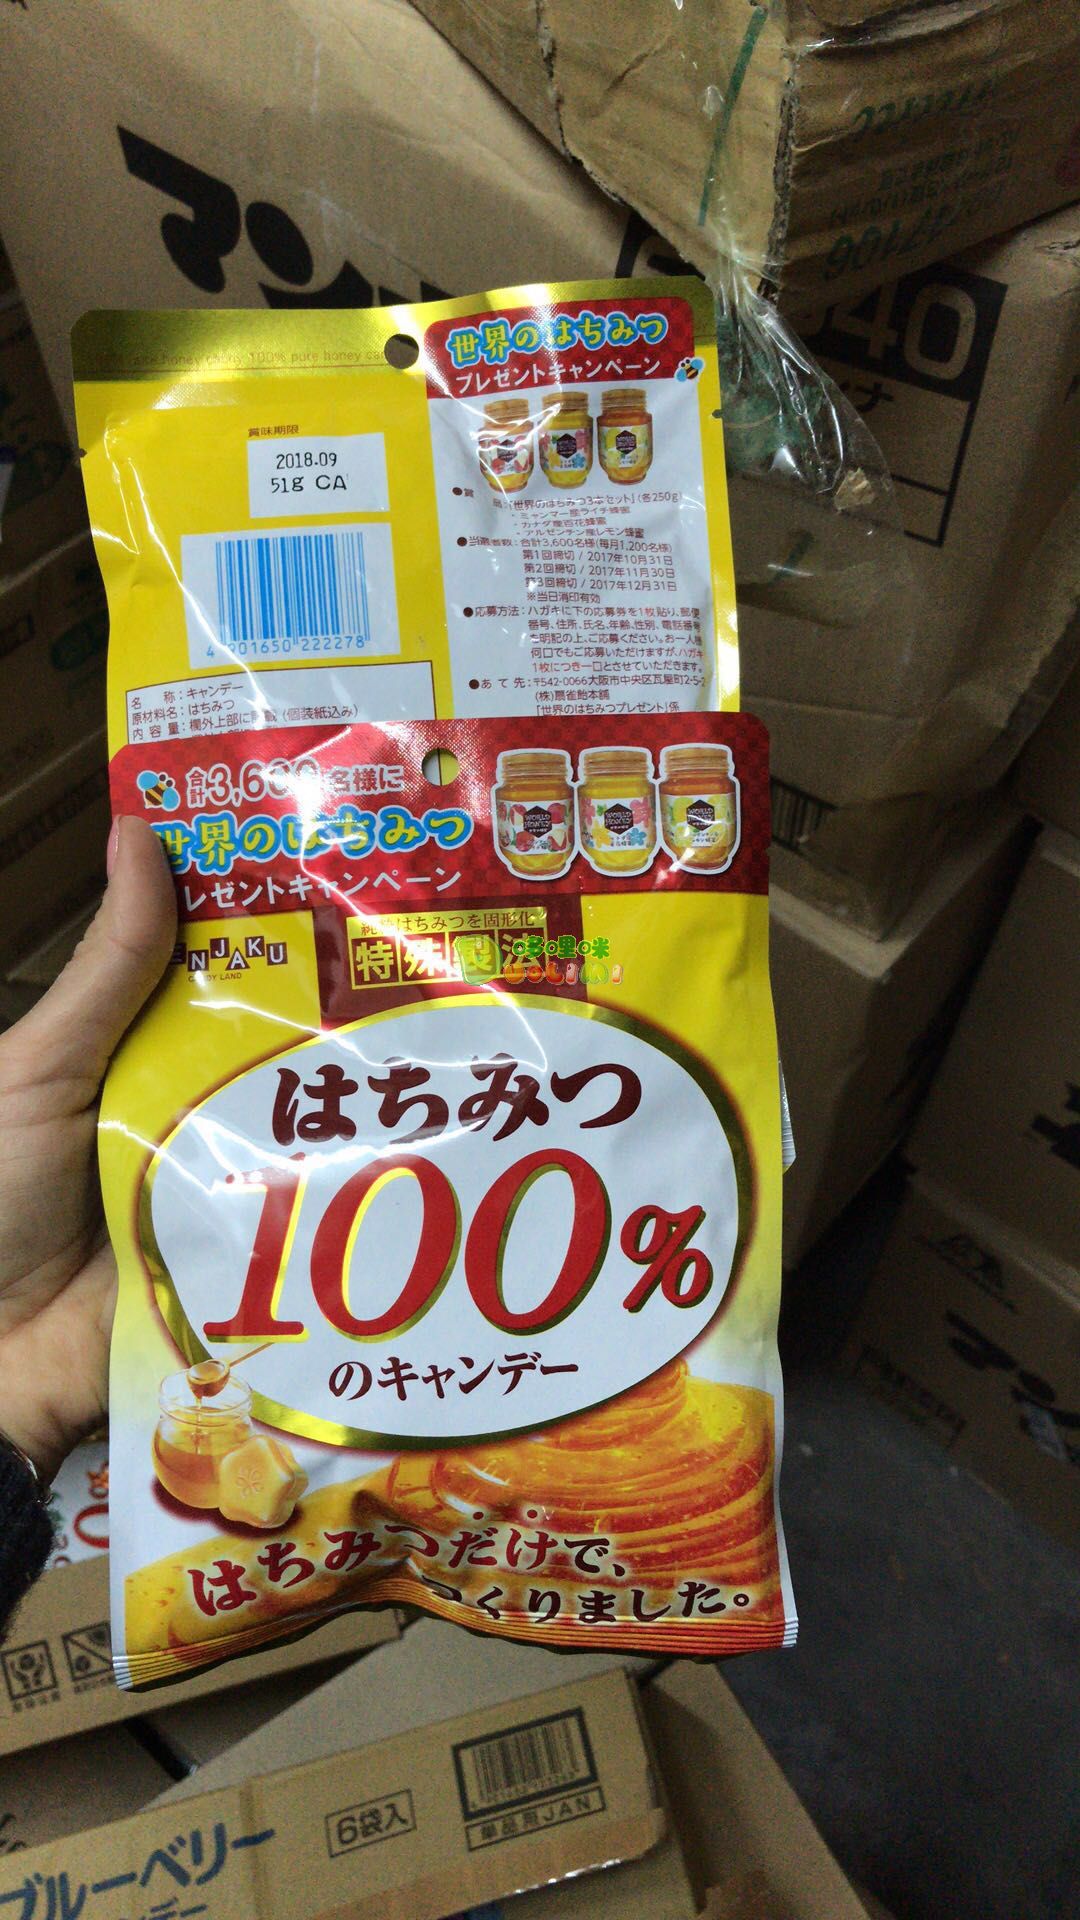 Kẹo Senjaku 100% mật ong nguyên chất 51g Nội địa Nhật Bản